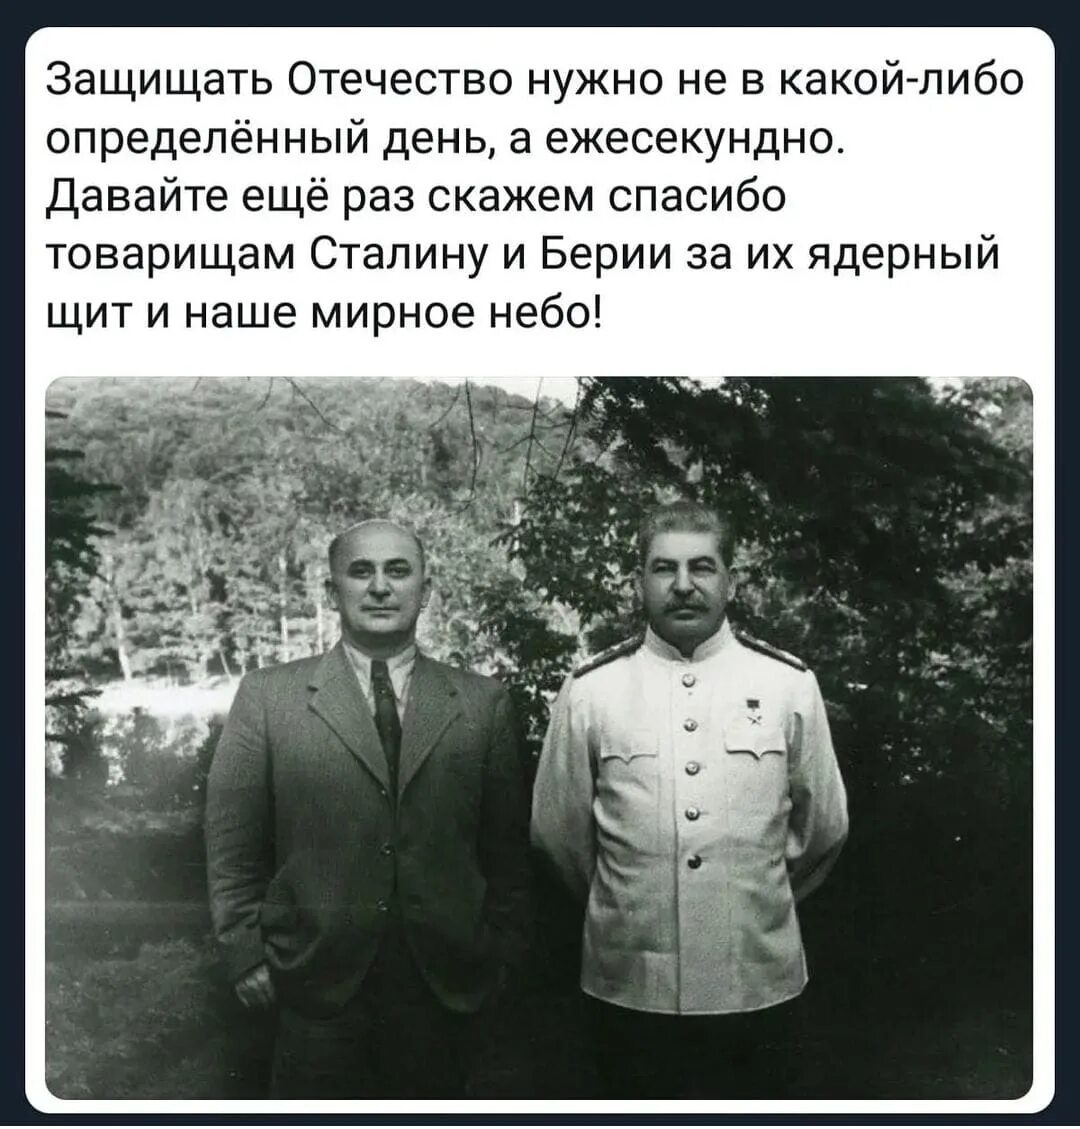 Сталин и Берия. Сталин русский грузинского происхождения. Сталин я русский человек грузинской национальности. Сталинский ядерный щит. Причина ареста берии